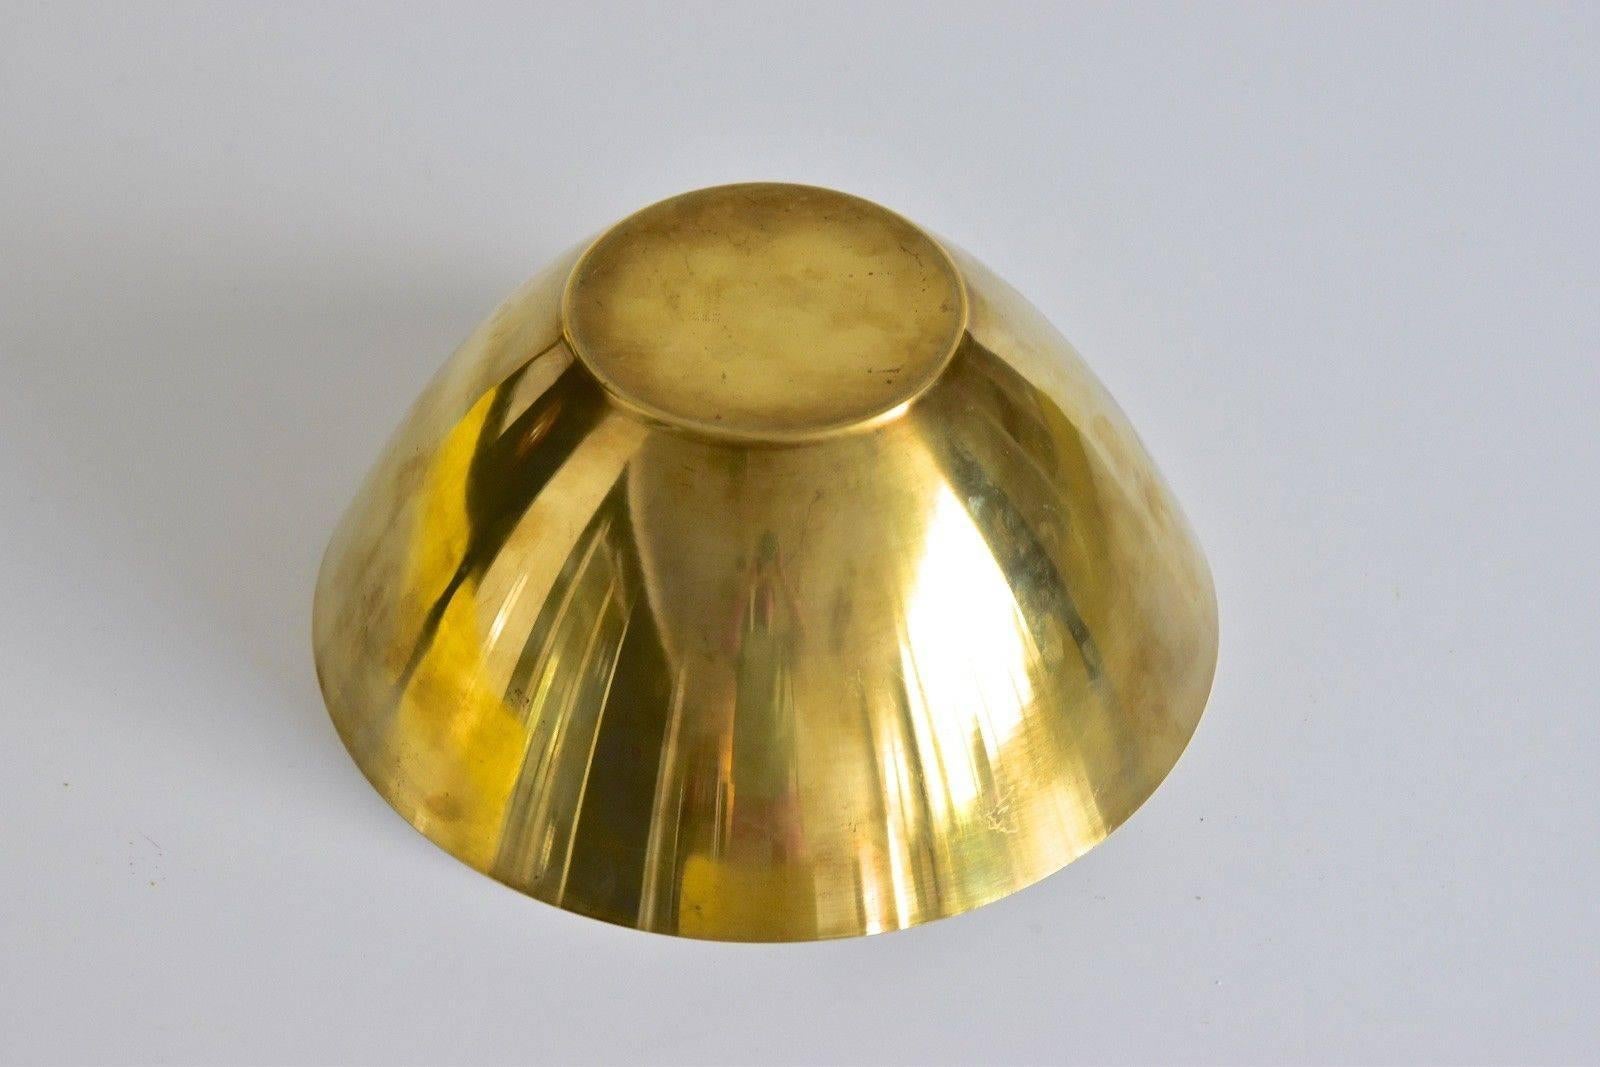 Arne Jacobsen Brass Line Bowl by Stelton Made in Denmark 2